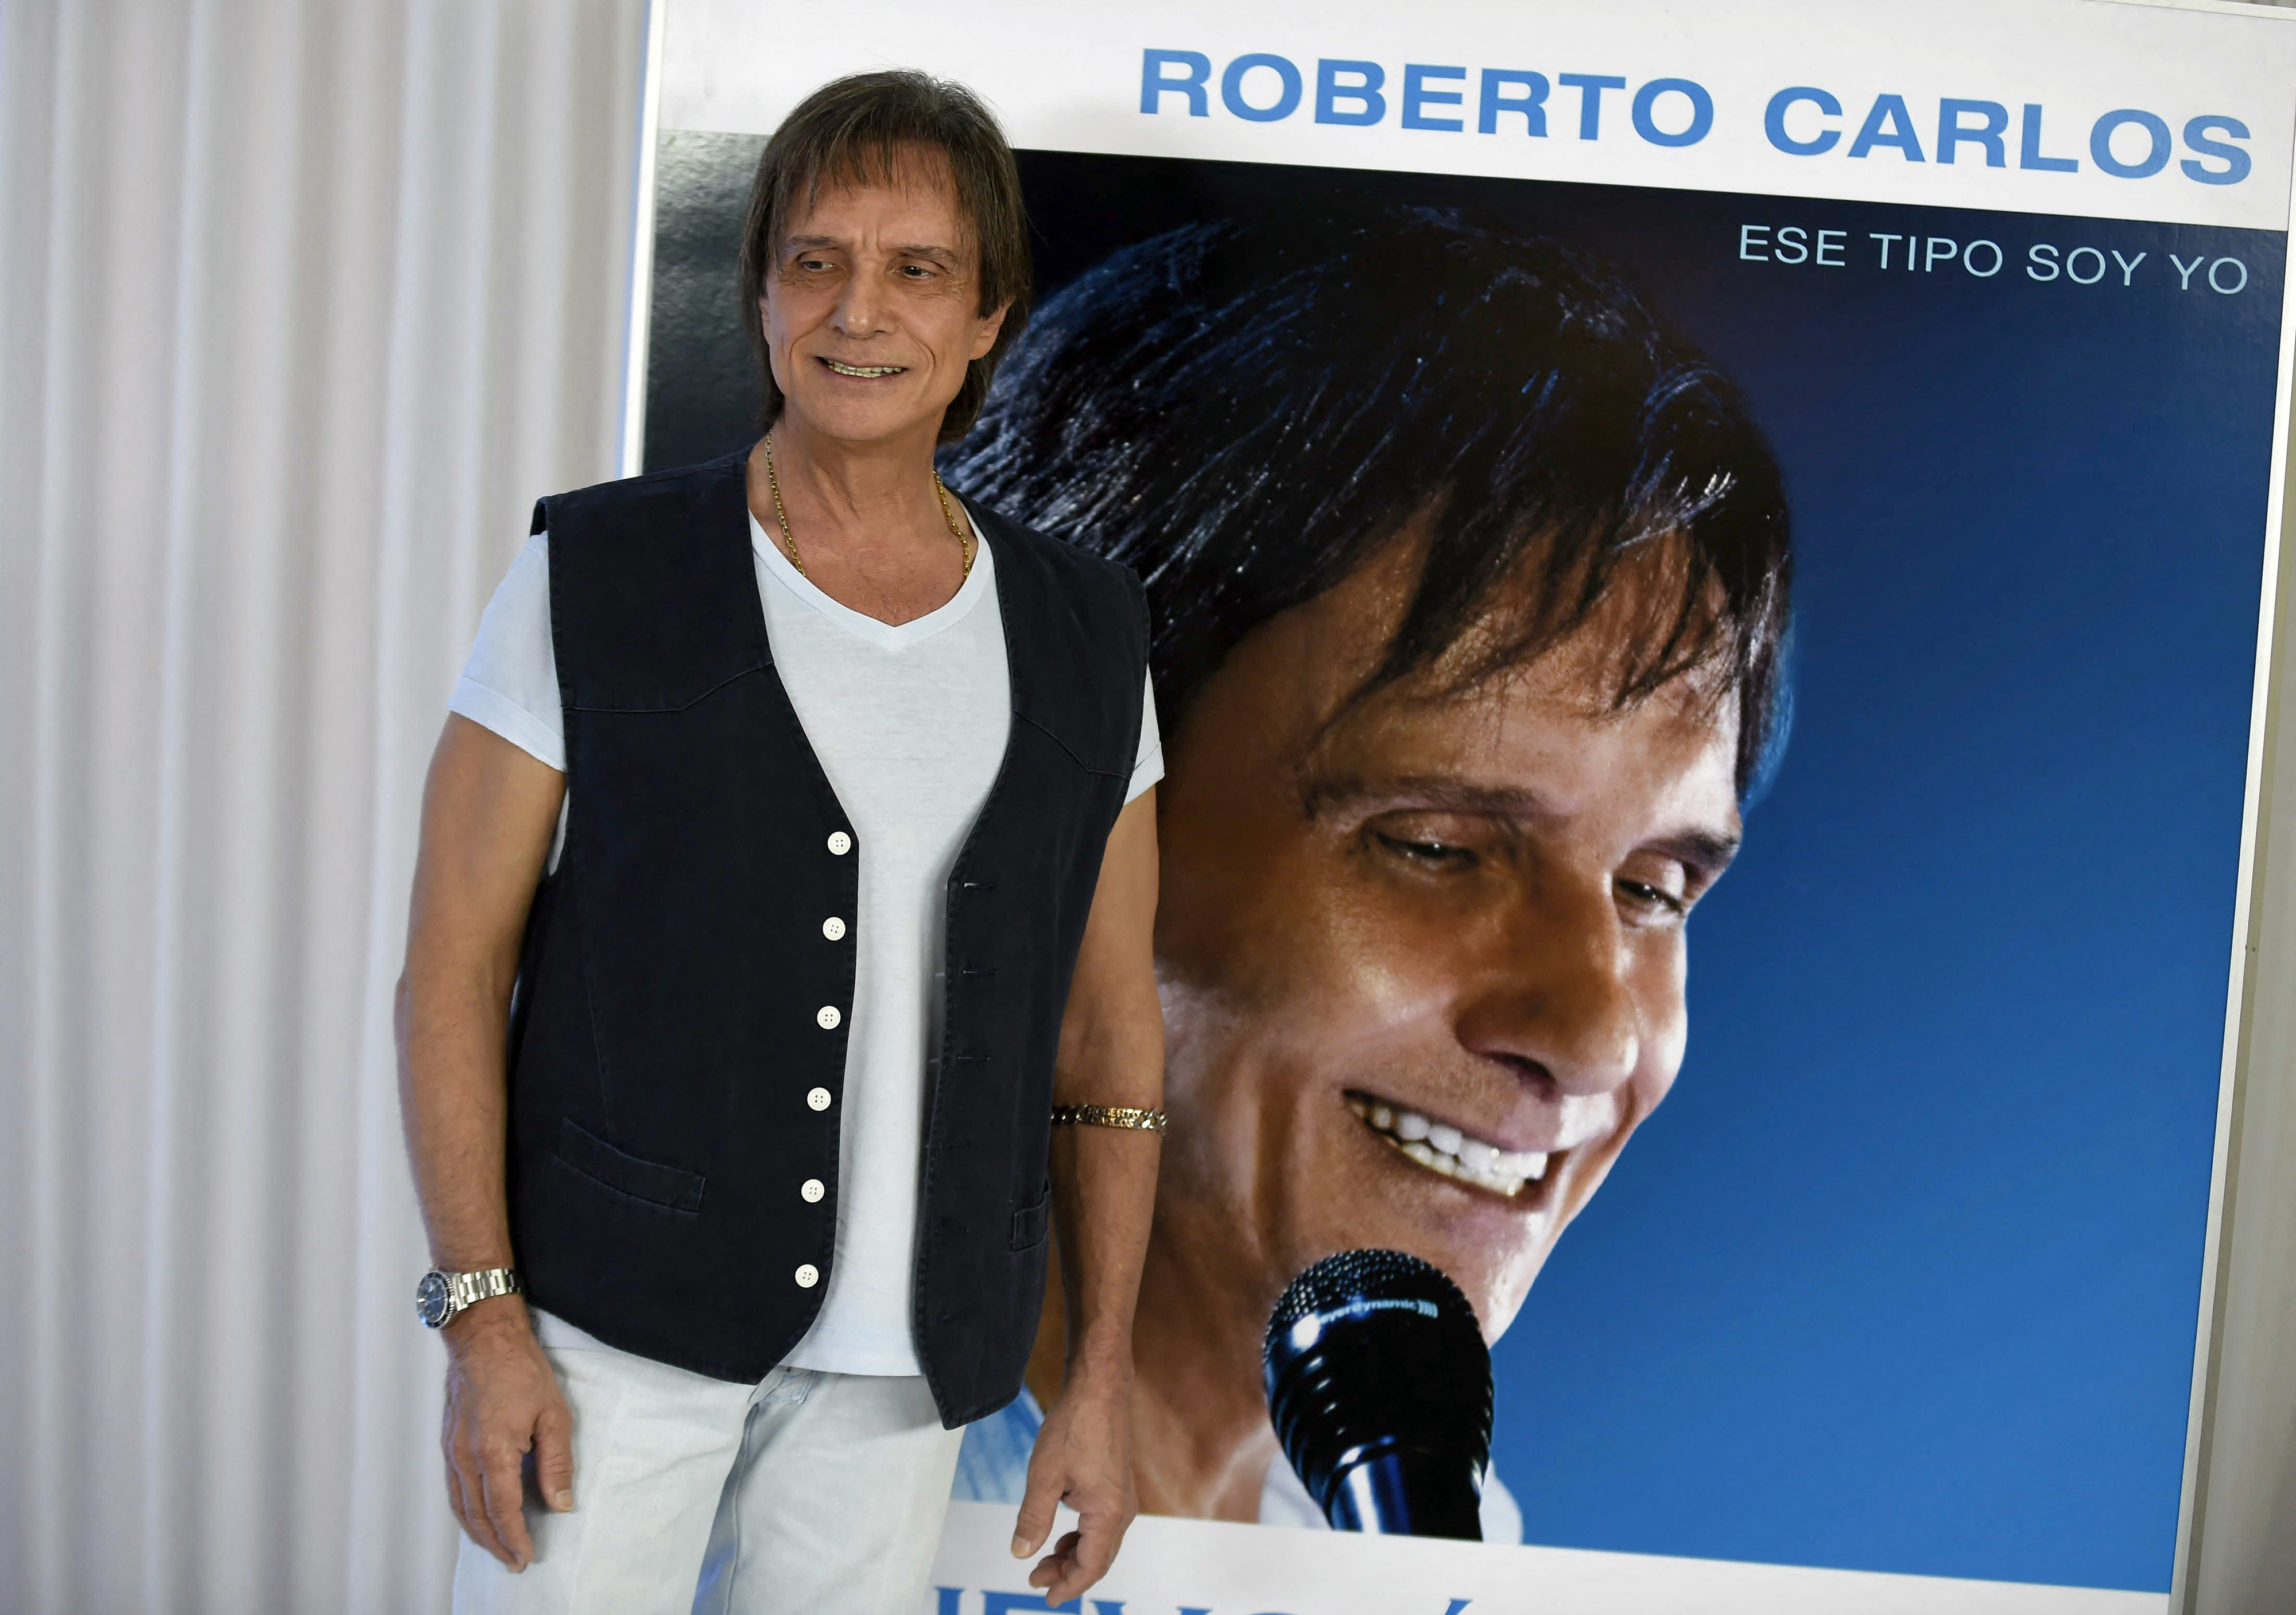 Traumas, amores e a fama: a história de Roberto Carlos contada em